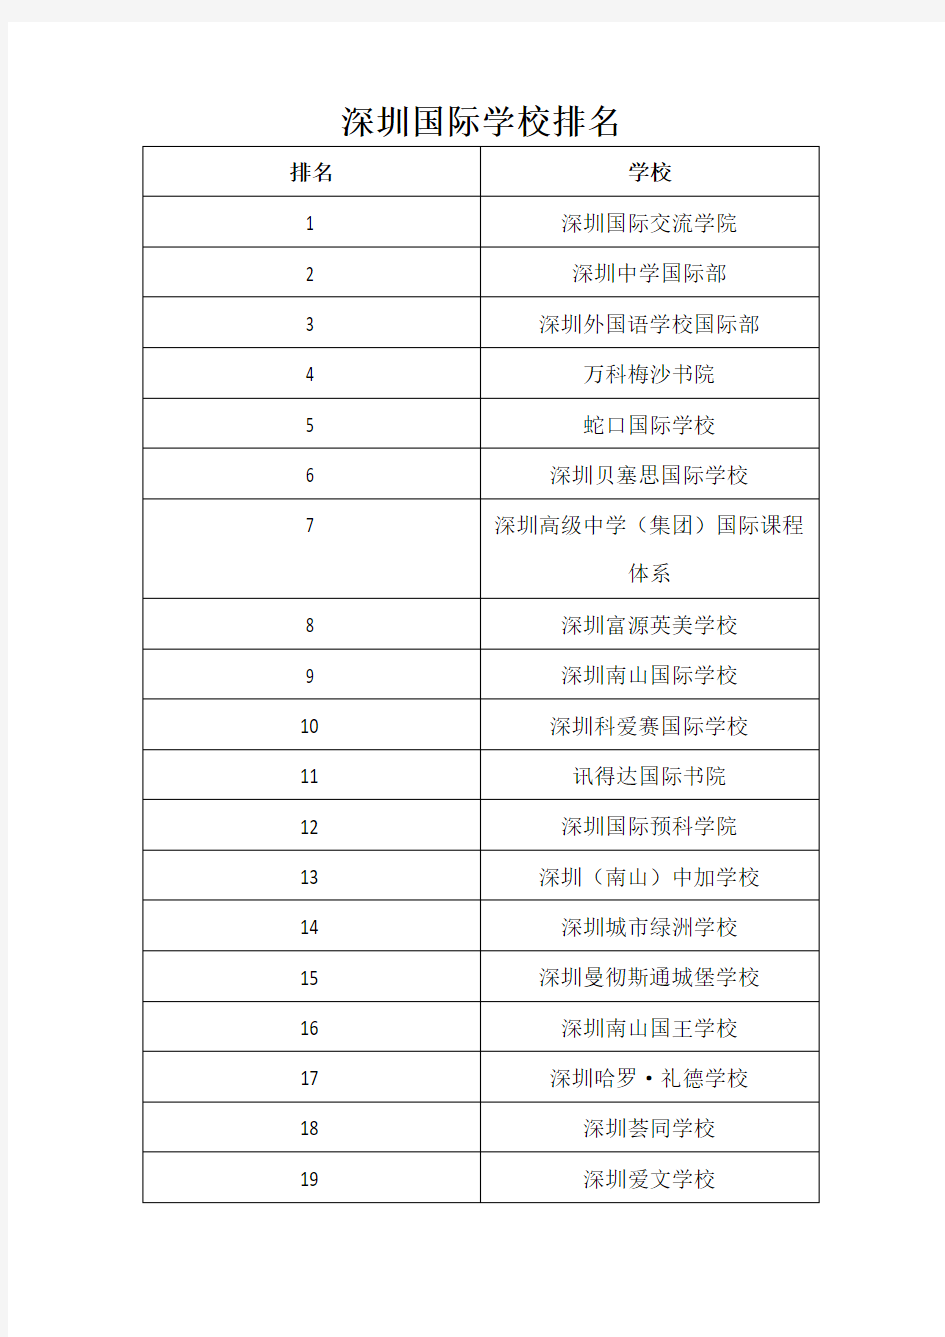 深圳国际学校排名